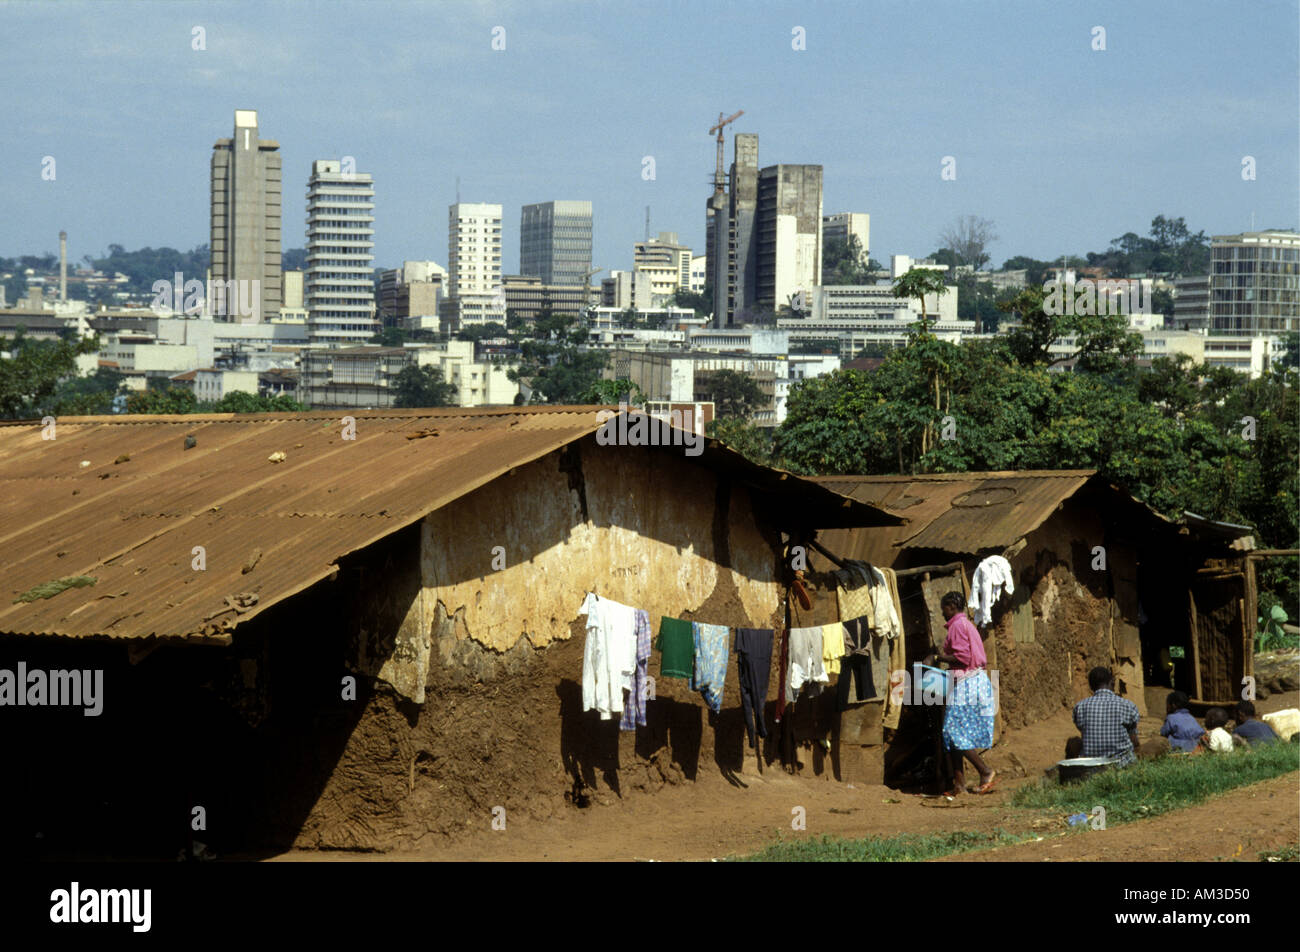 Baraccopoli case in vista dell'elevato aumento edifici moderni nel centro di Kampala capitale dell Uganda Africa orientale Foto Stock